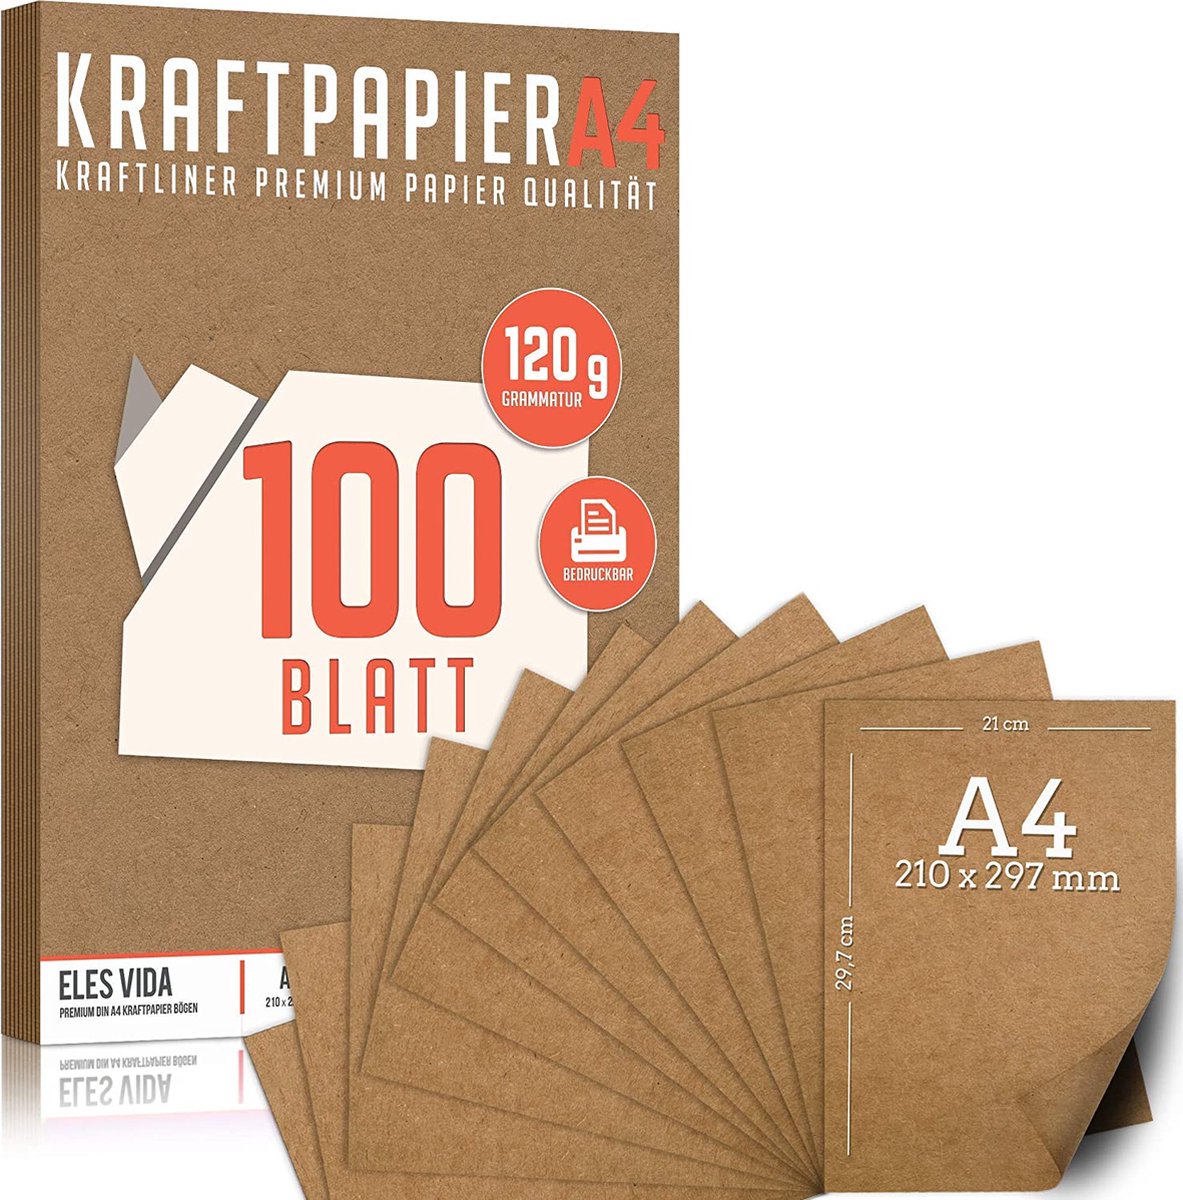 Lot de 25 feuilles de papier autocollant A4 pour imprimante à jet